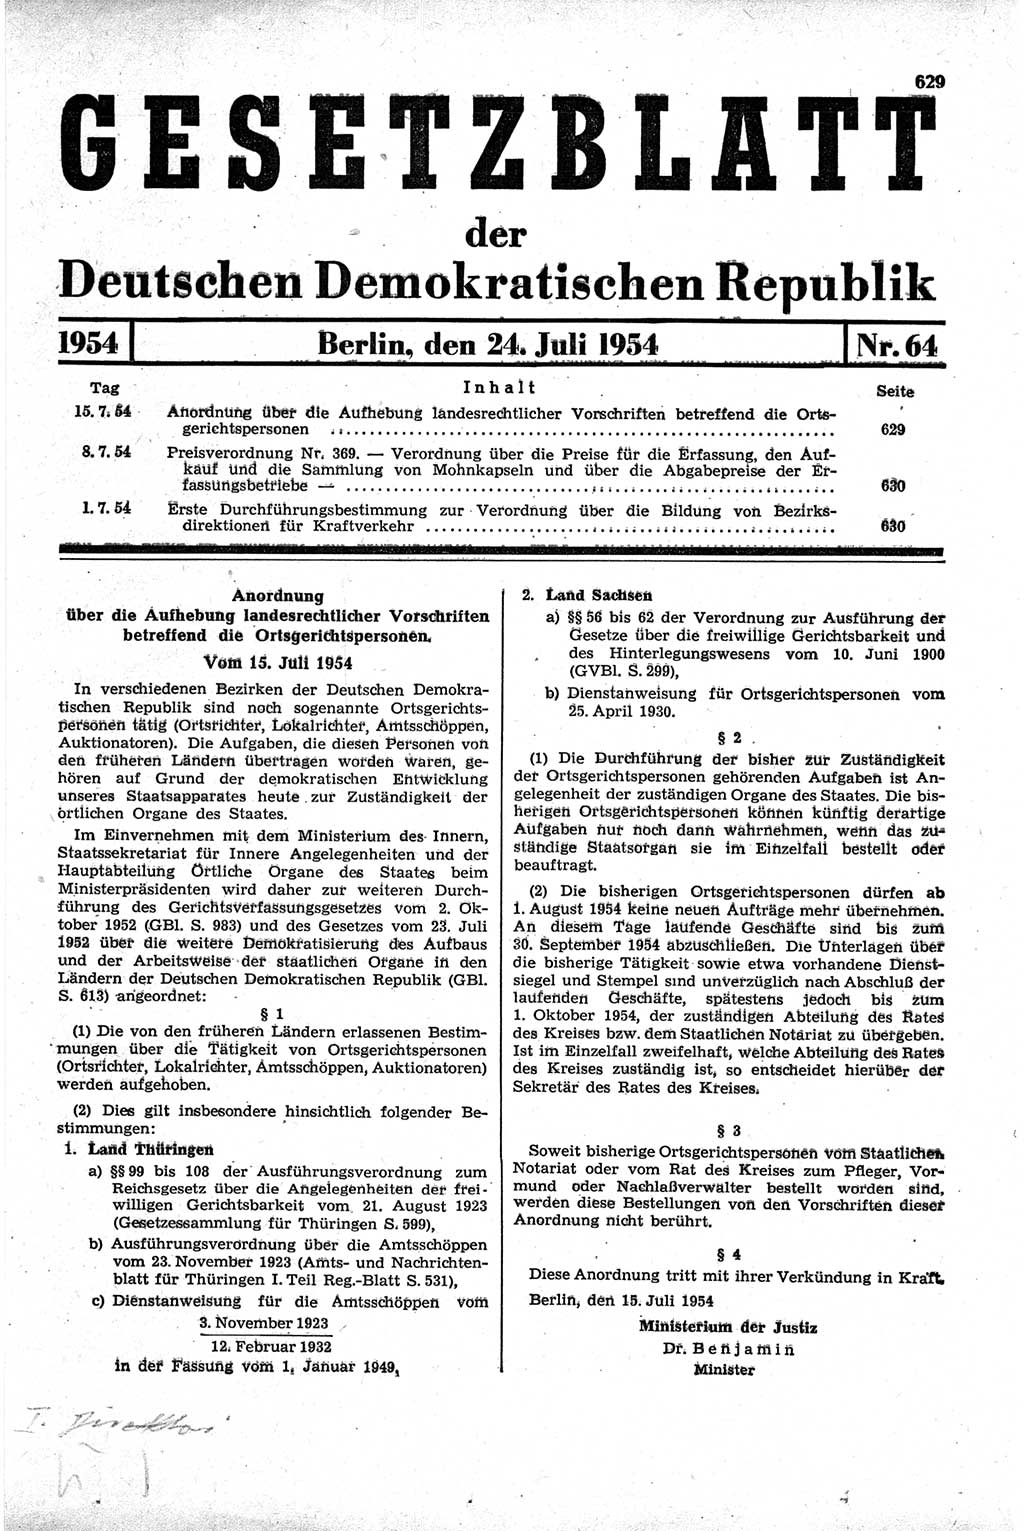 Gesetzblatt (GBl.) der Deutschen Demokratischen Republik (DDR) 1954, Seite 629 (GBl. DDR 1954, S. 629)